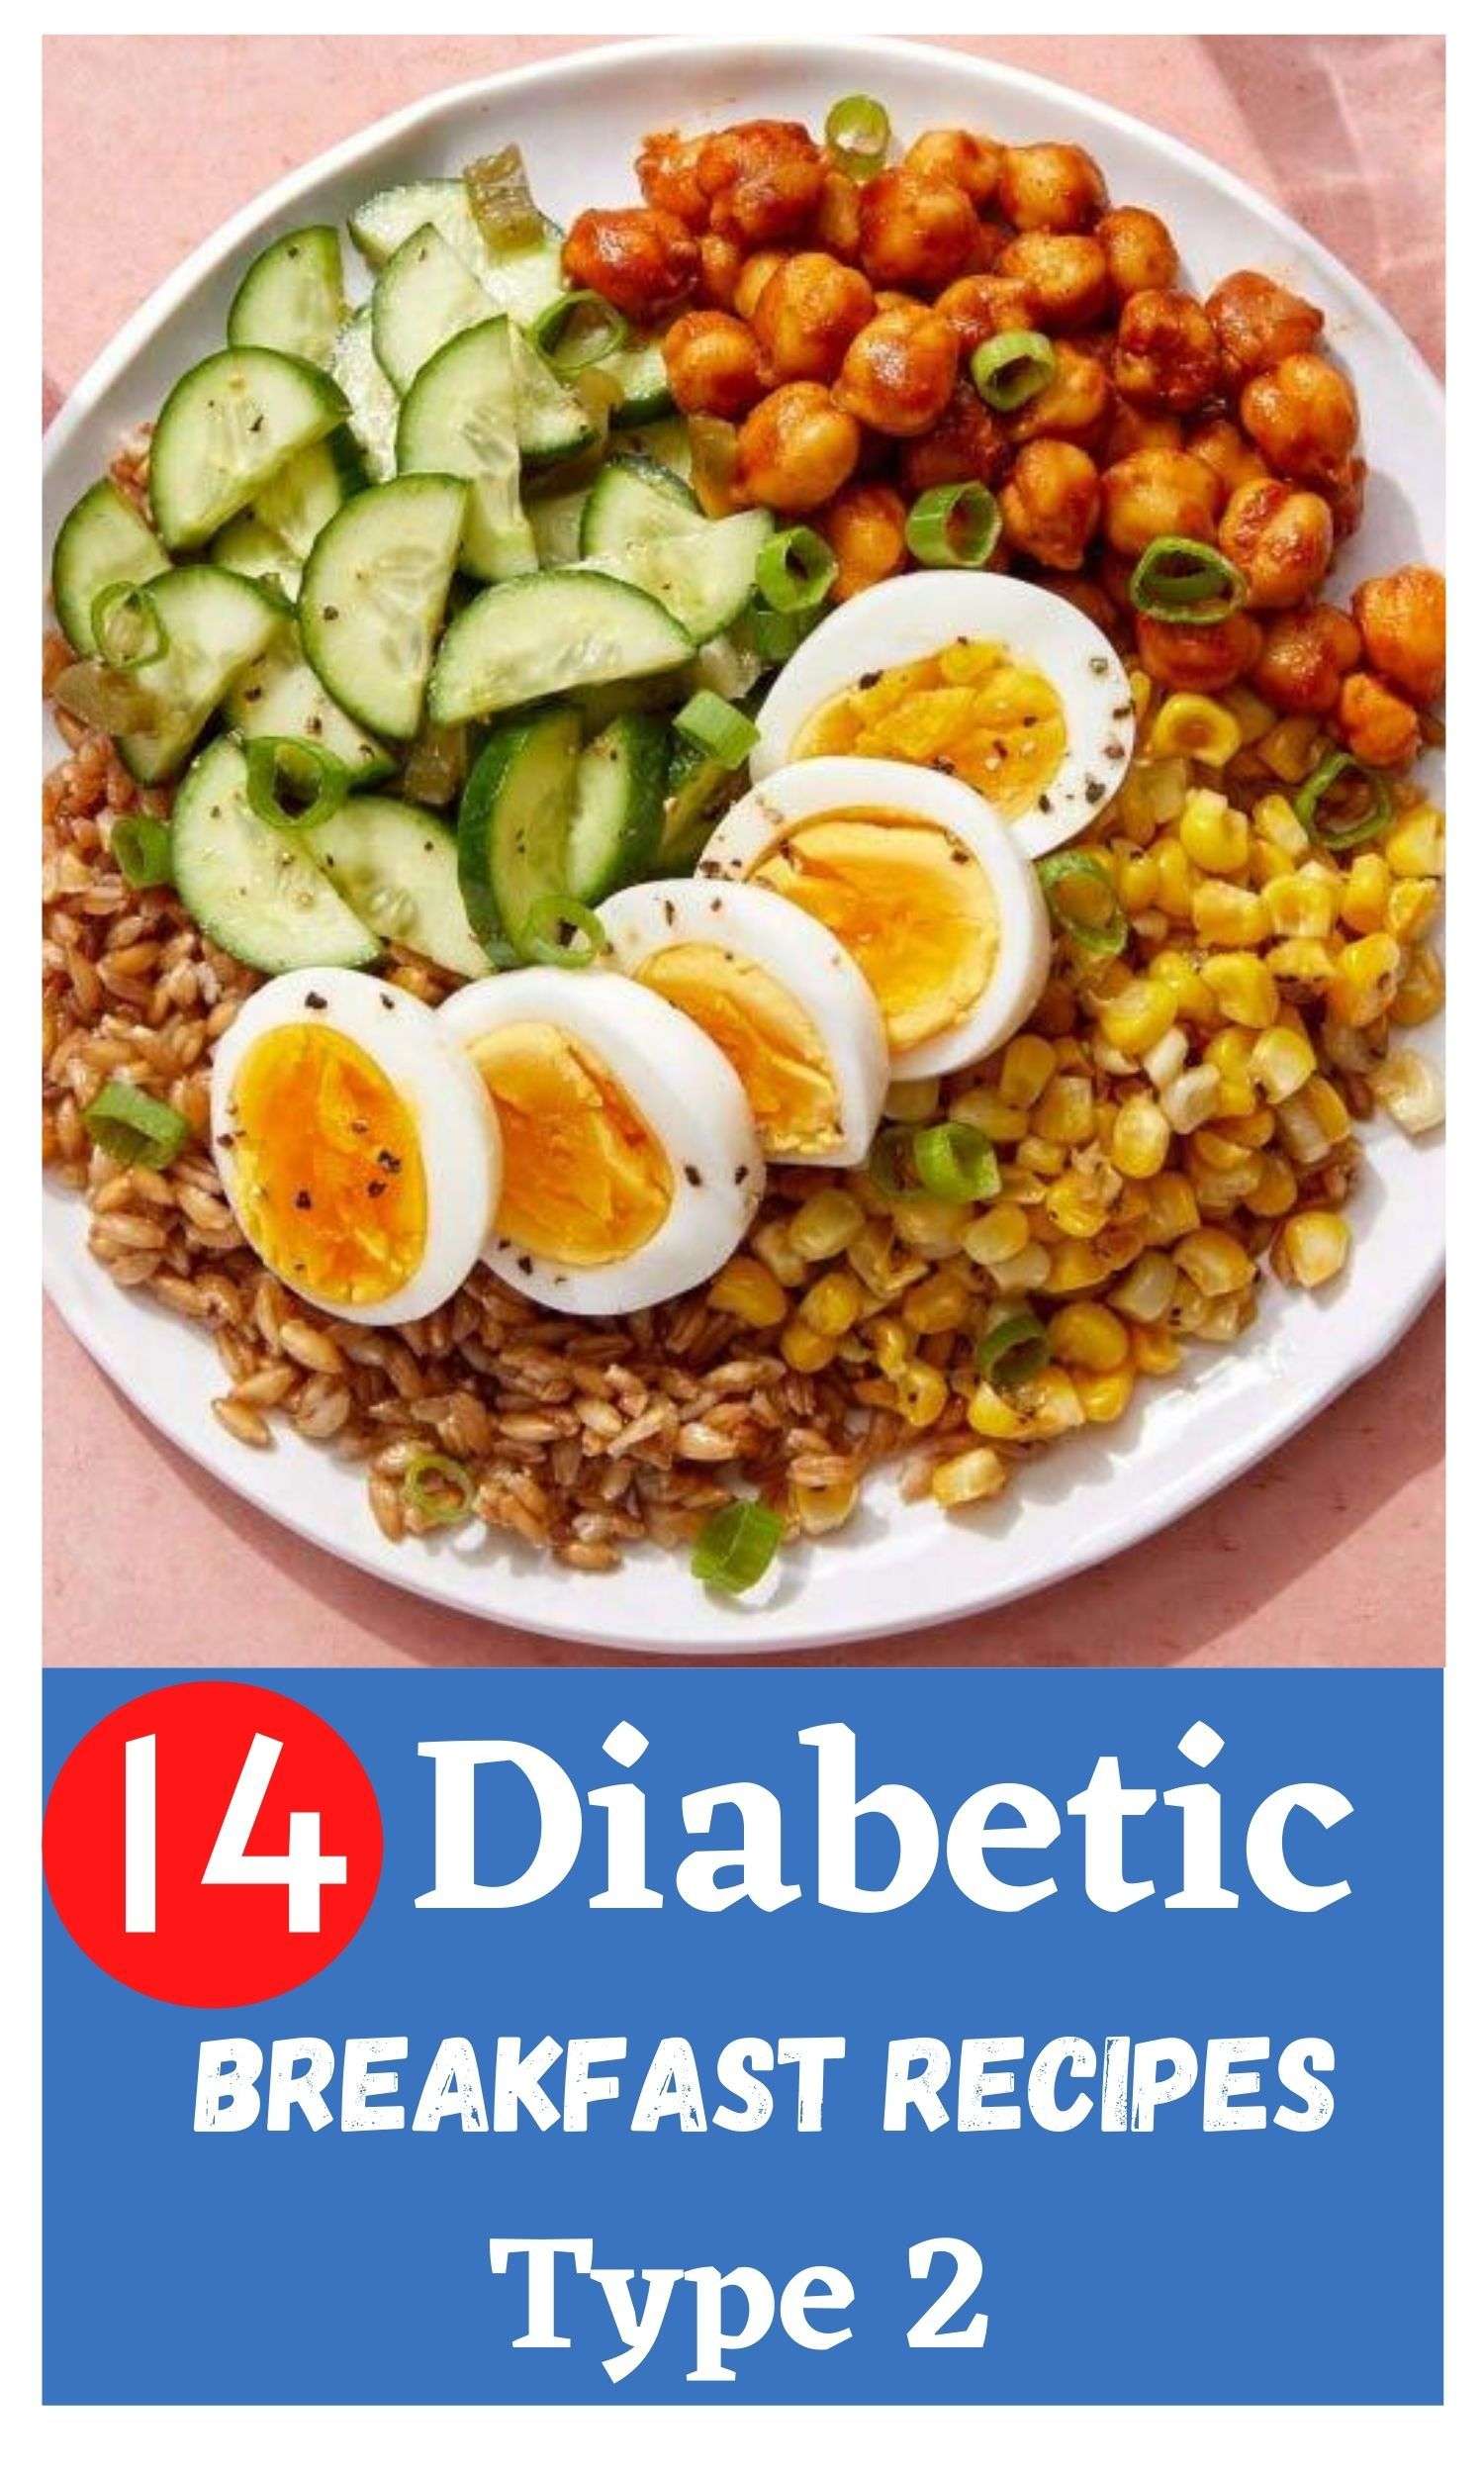 14 Diabetic Breakfast Recipes Type 2